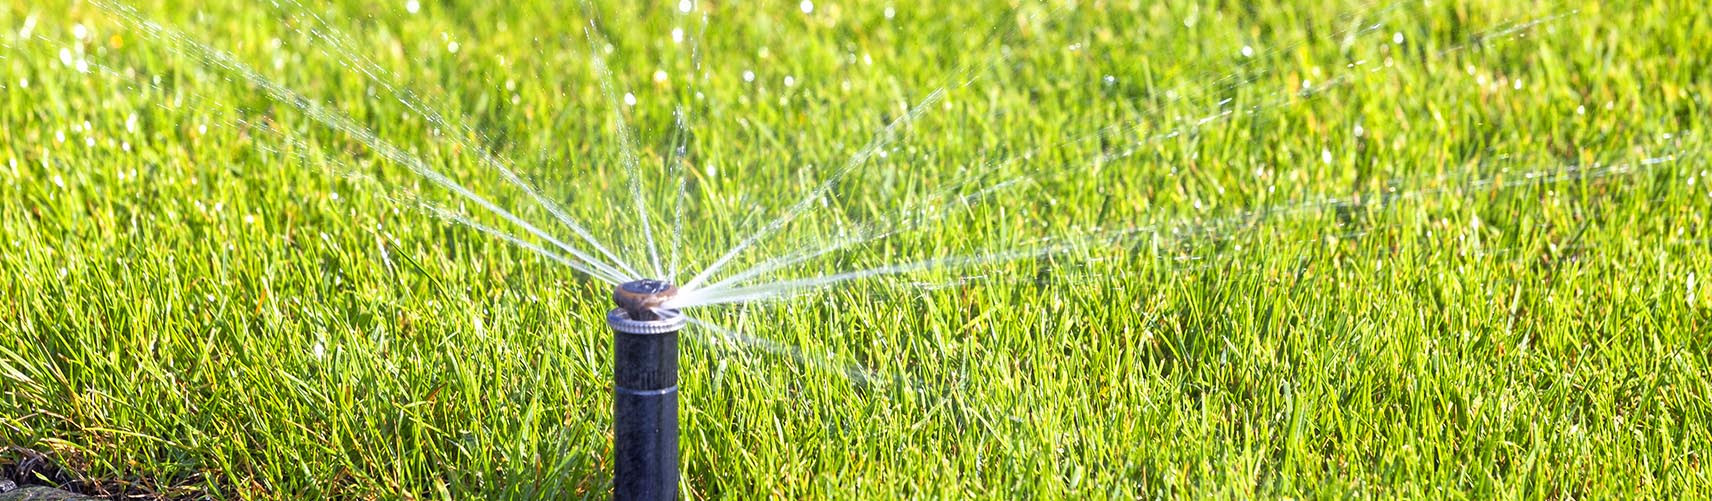 Denver Landscaping Company, Irrigation System Installation and Sprinkler System Installation